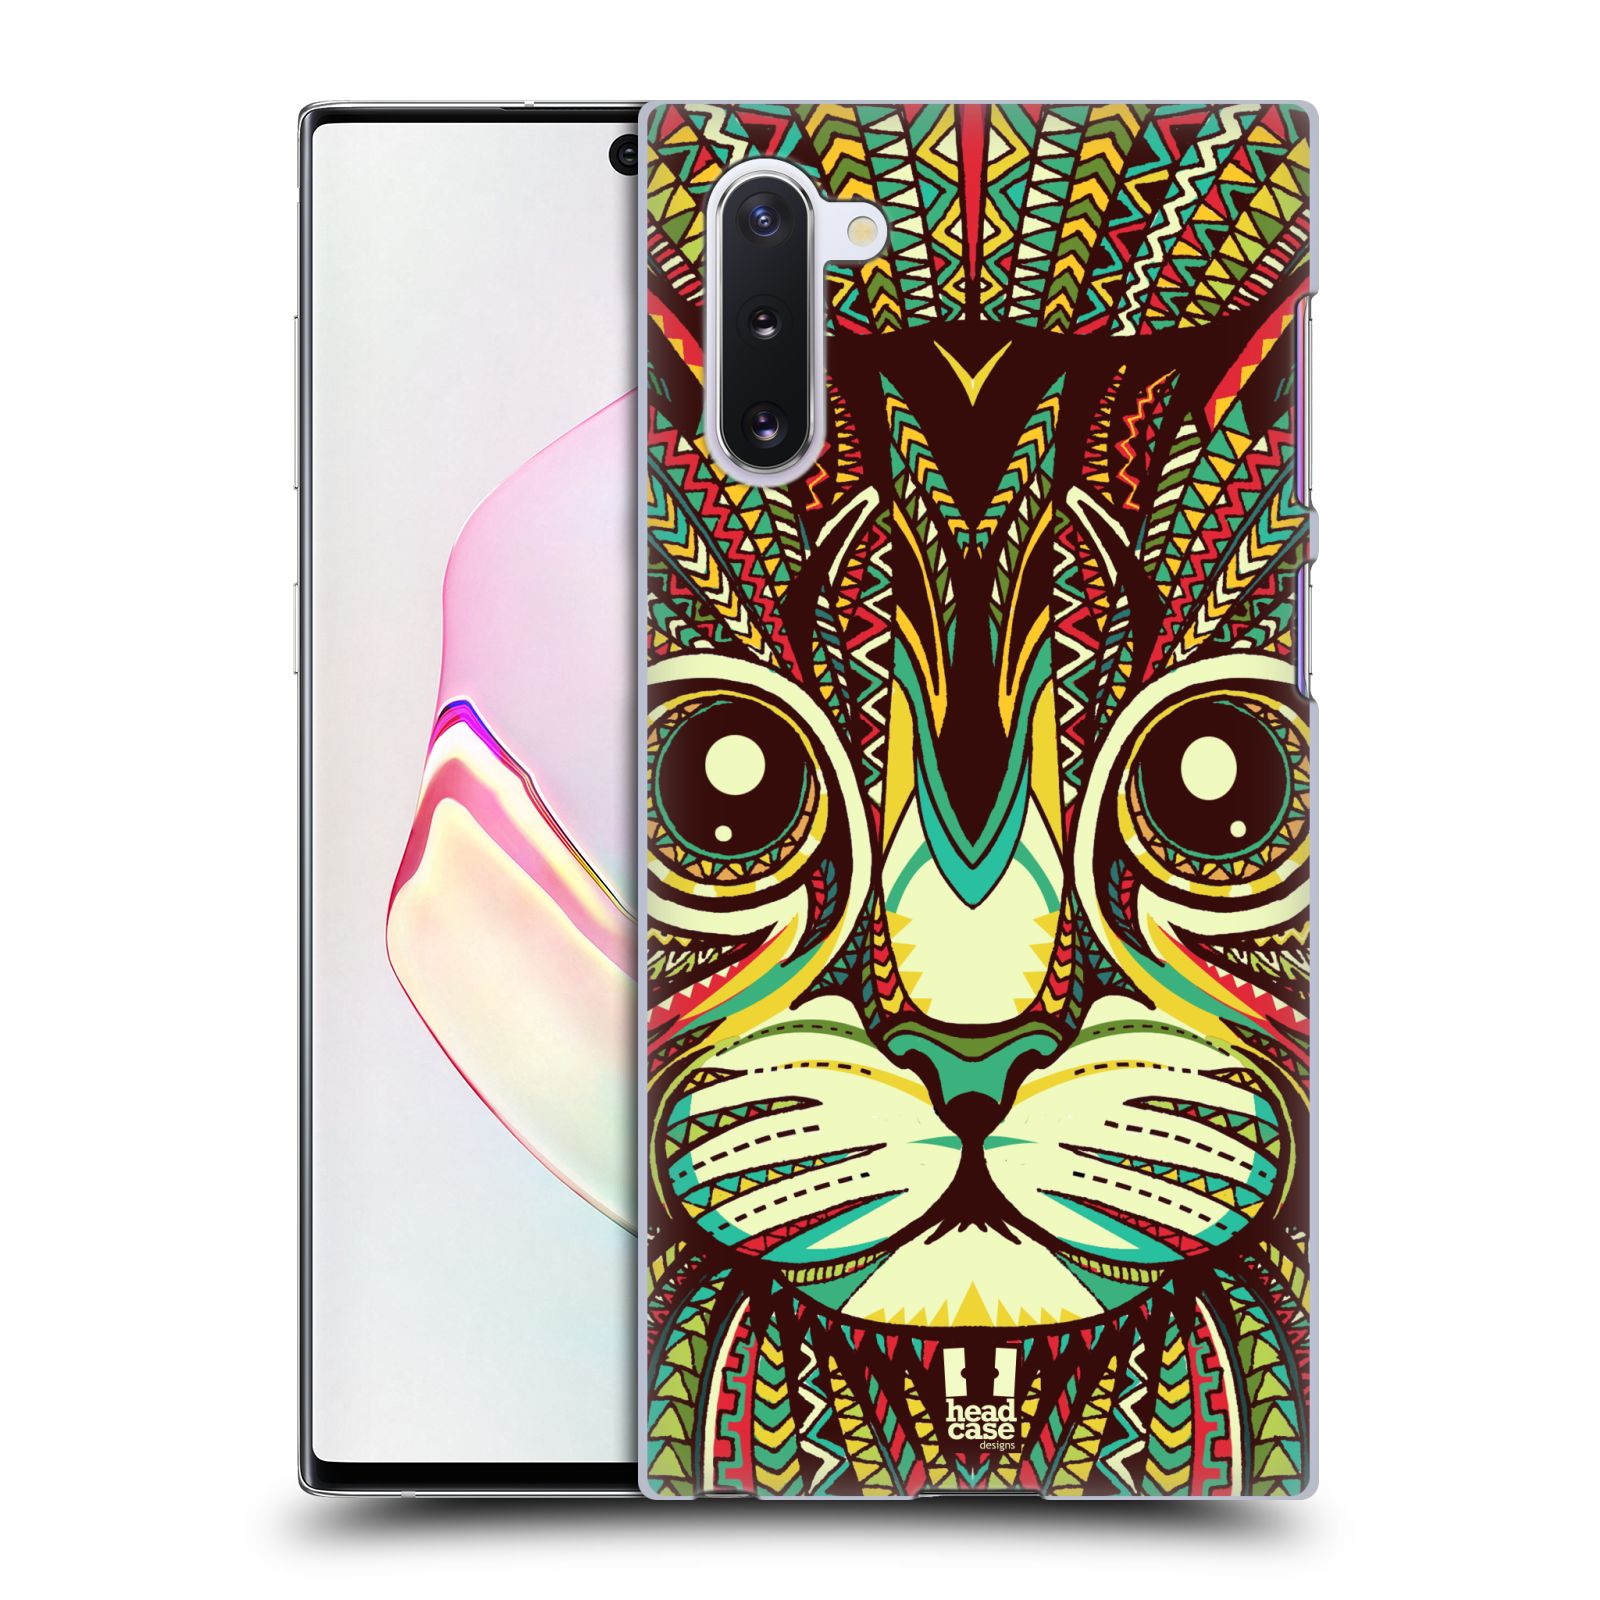 Pouzdro na mobil Samsung Galaxy Note 10 - HEAD CASE - vzor Aztécký motiv zvíře 2 kotě